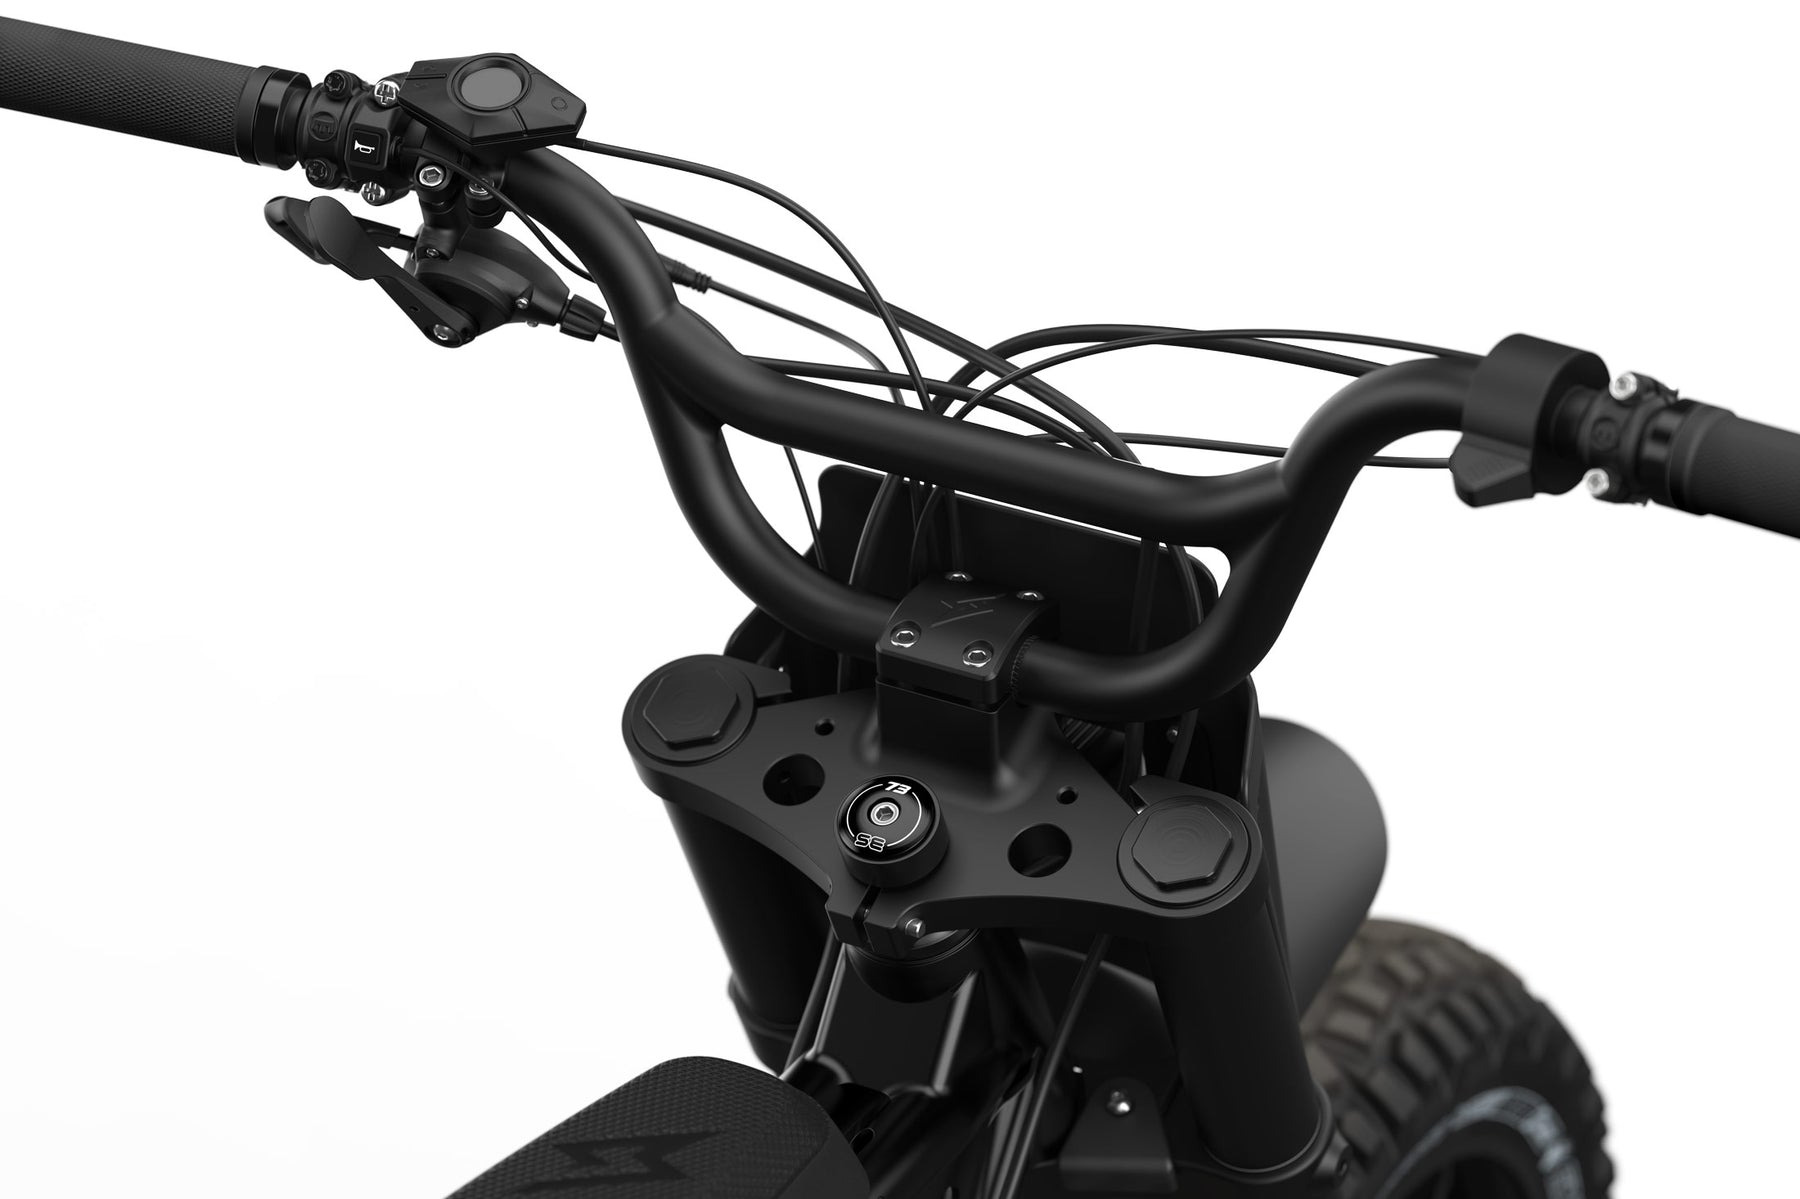 Detail shot of the branded stem cap on the SUPER73-S Blackout SE bike.